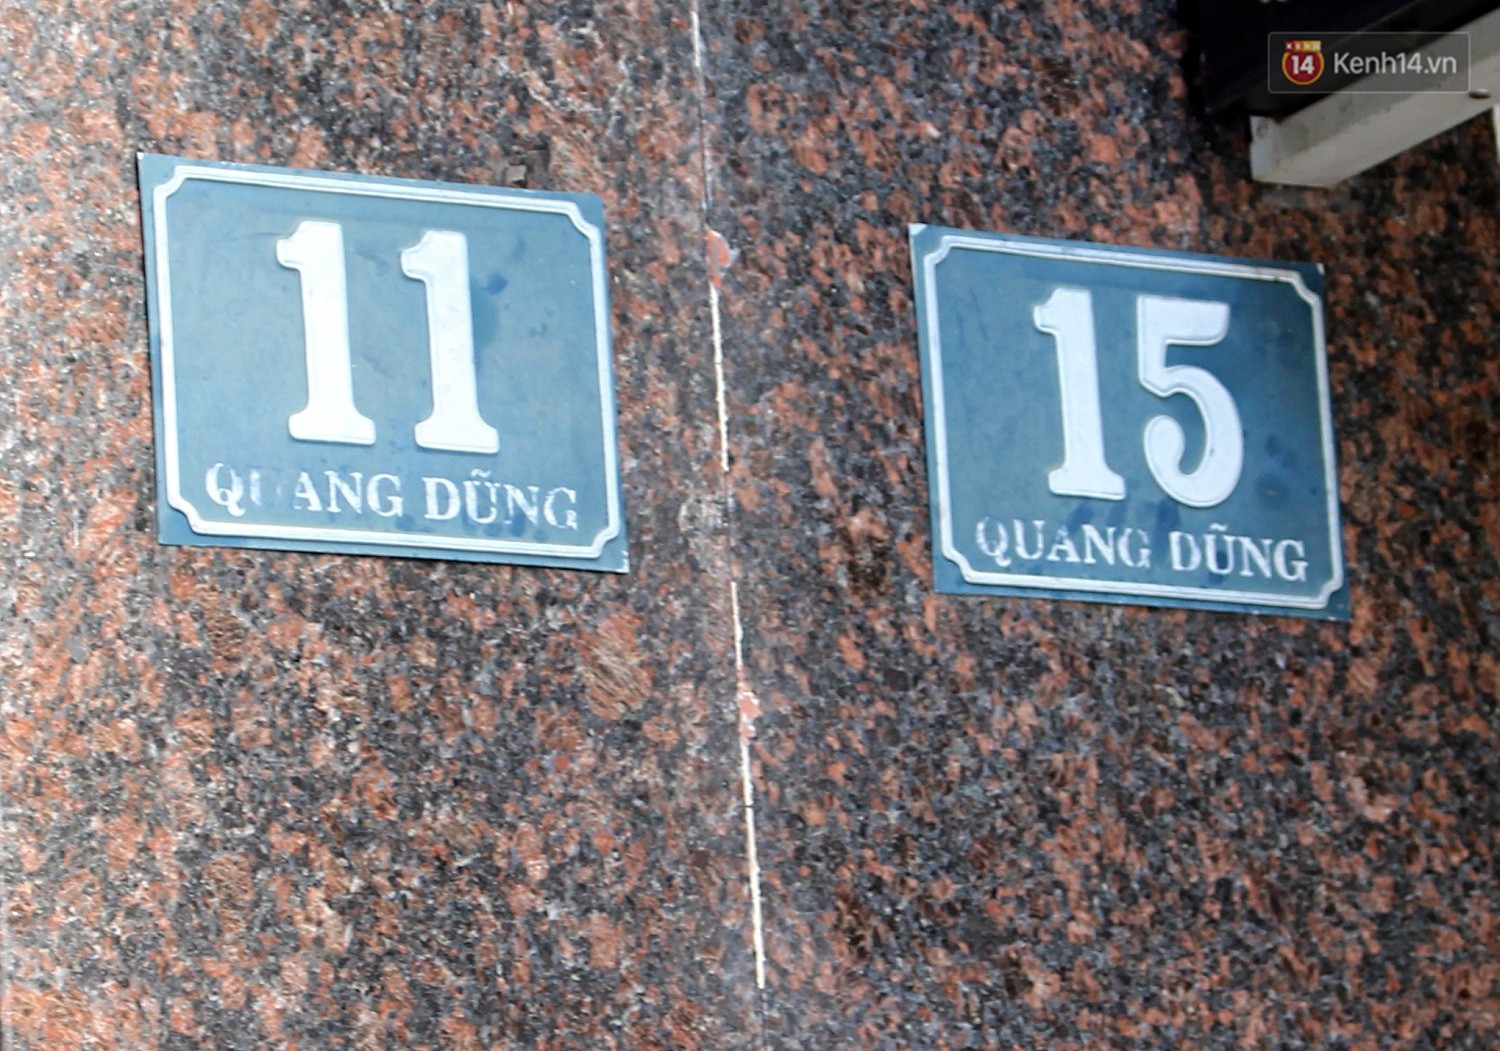 Chuyện lạ thú vị ở Đà Nẵng: Lục tung cả thành phố, khó tìm được số nhà 13! - Ảnh 6.